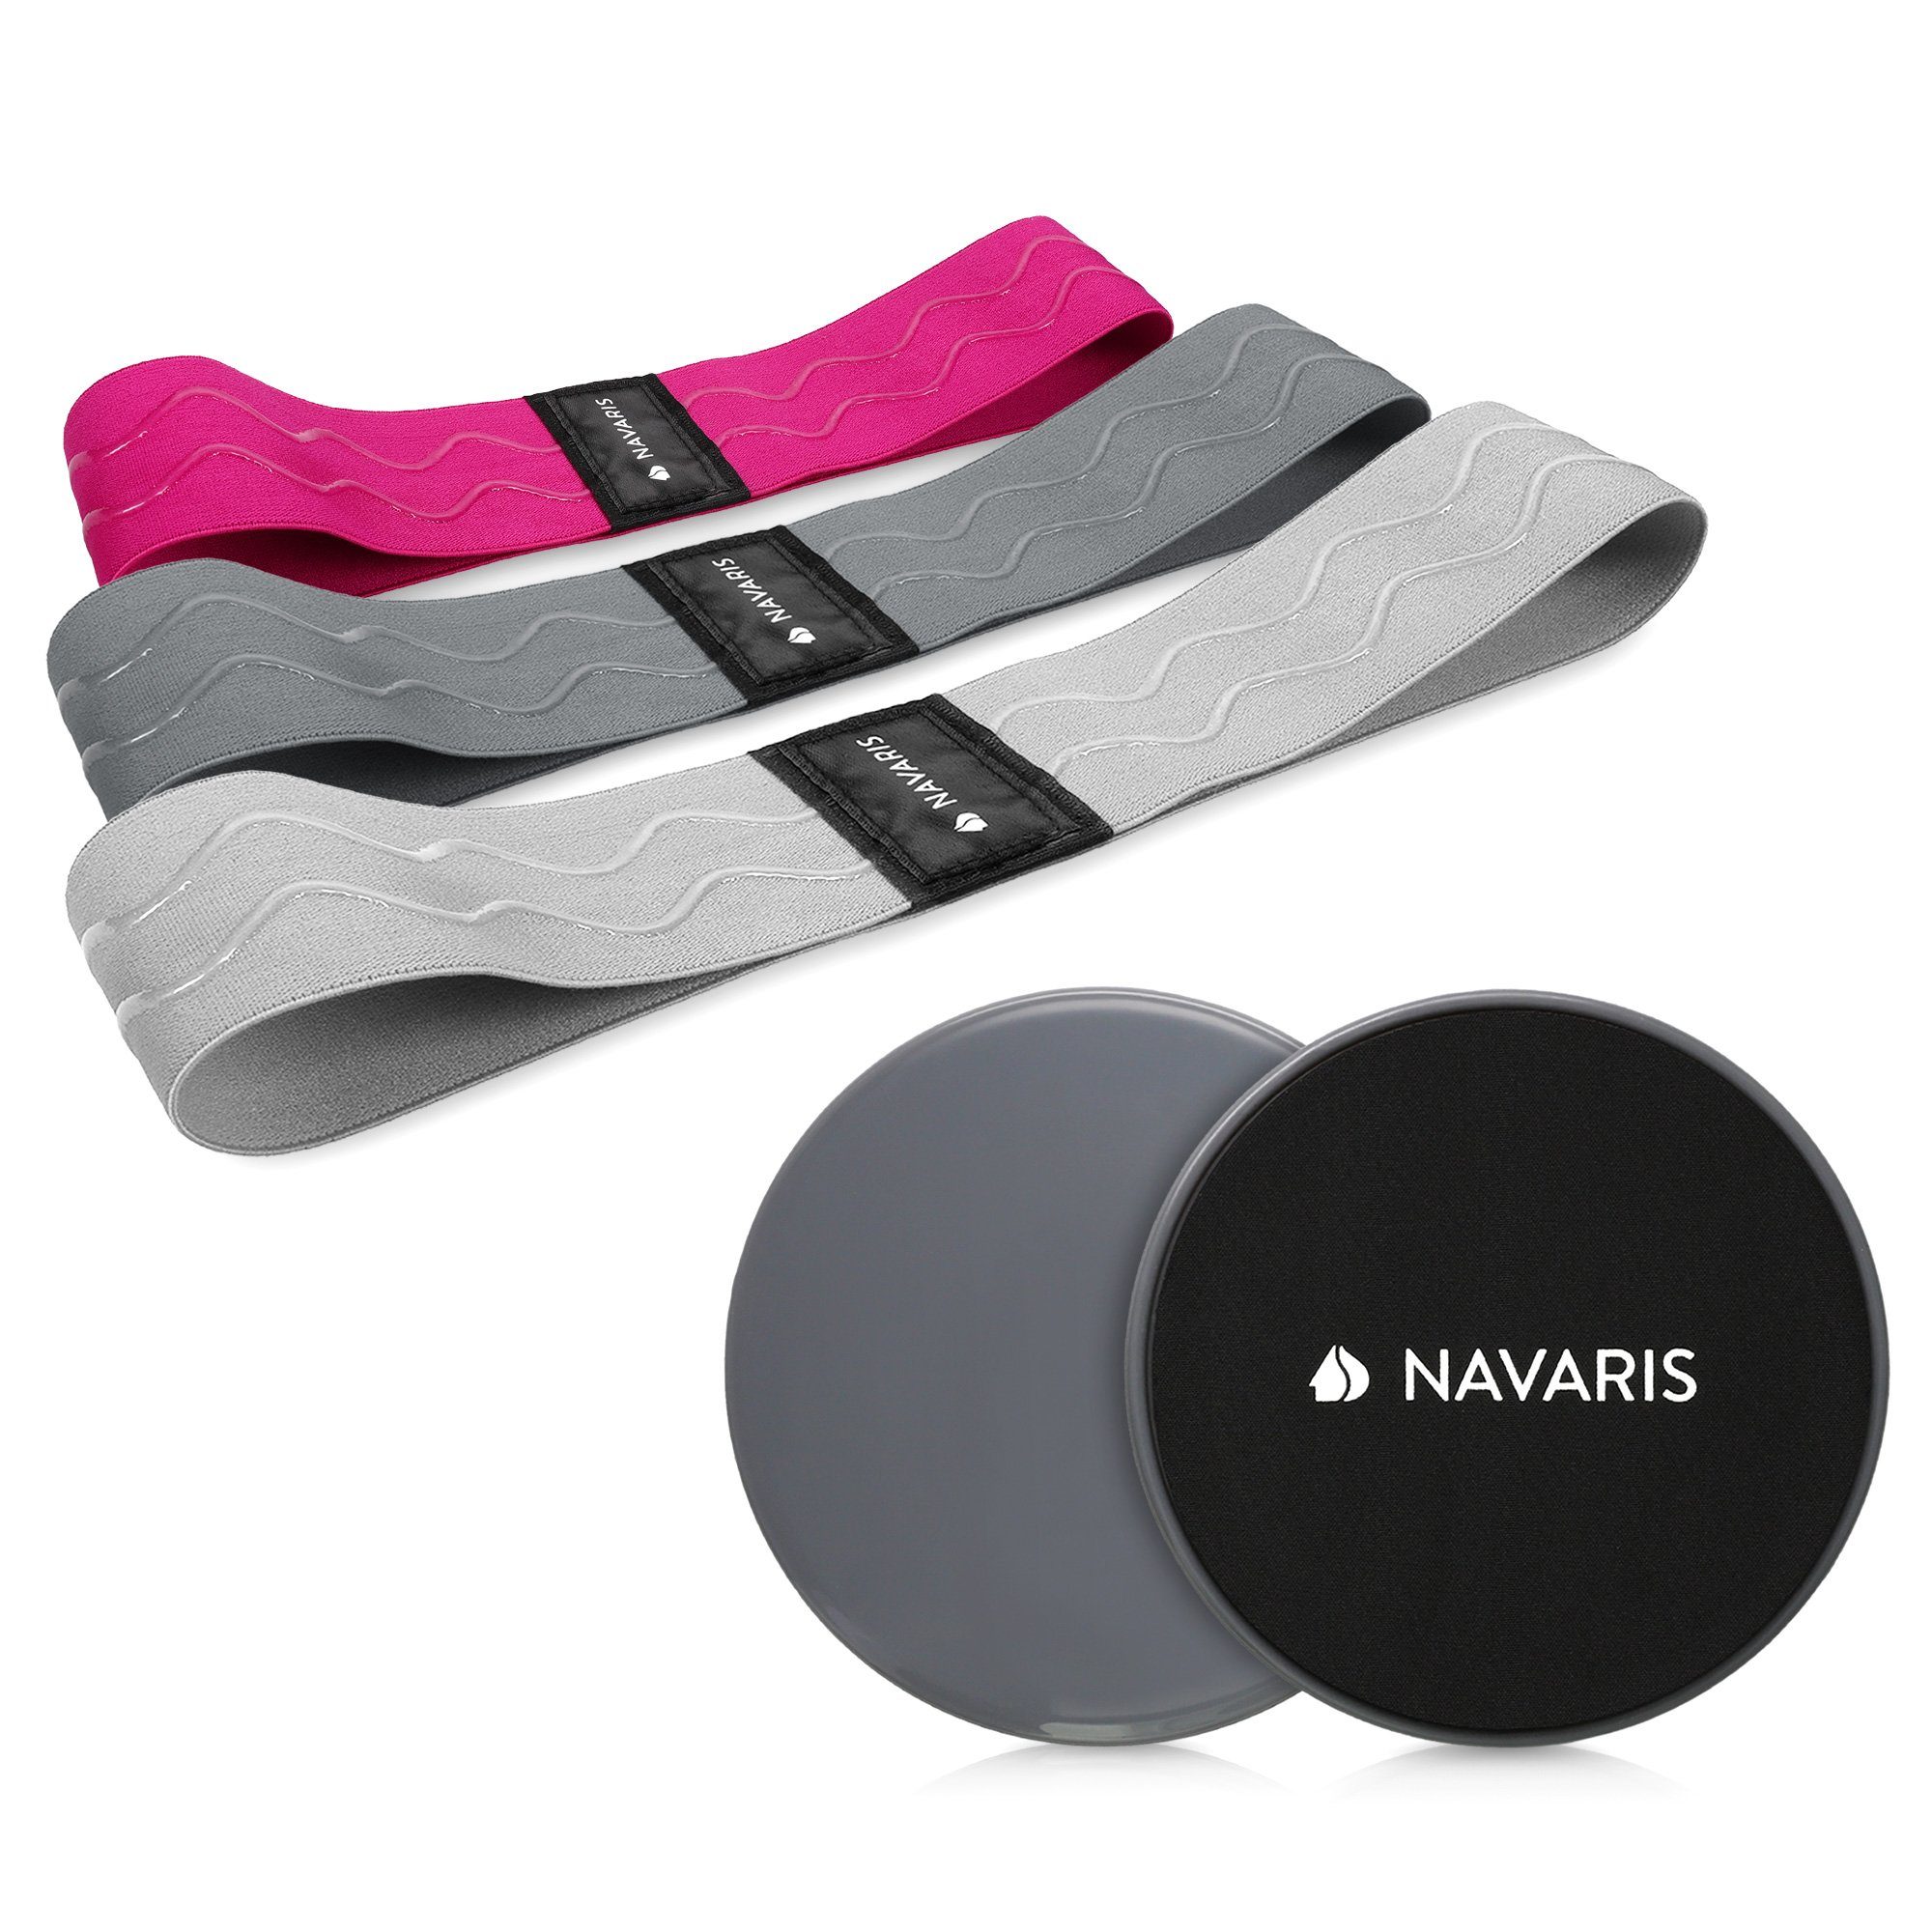 Navaris Trainingsbänder Fitness Gym Zuhause Set - Widerstandsbänder Bänder für